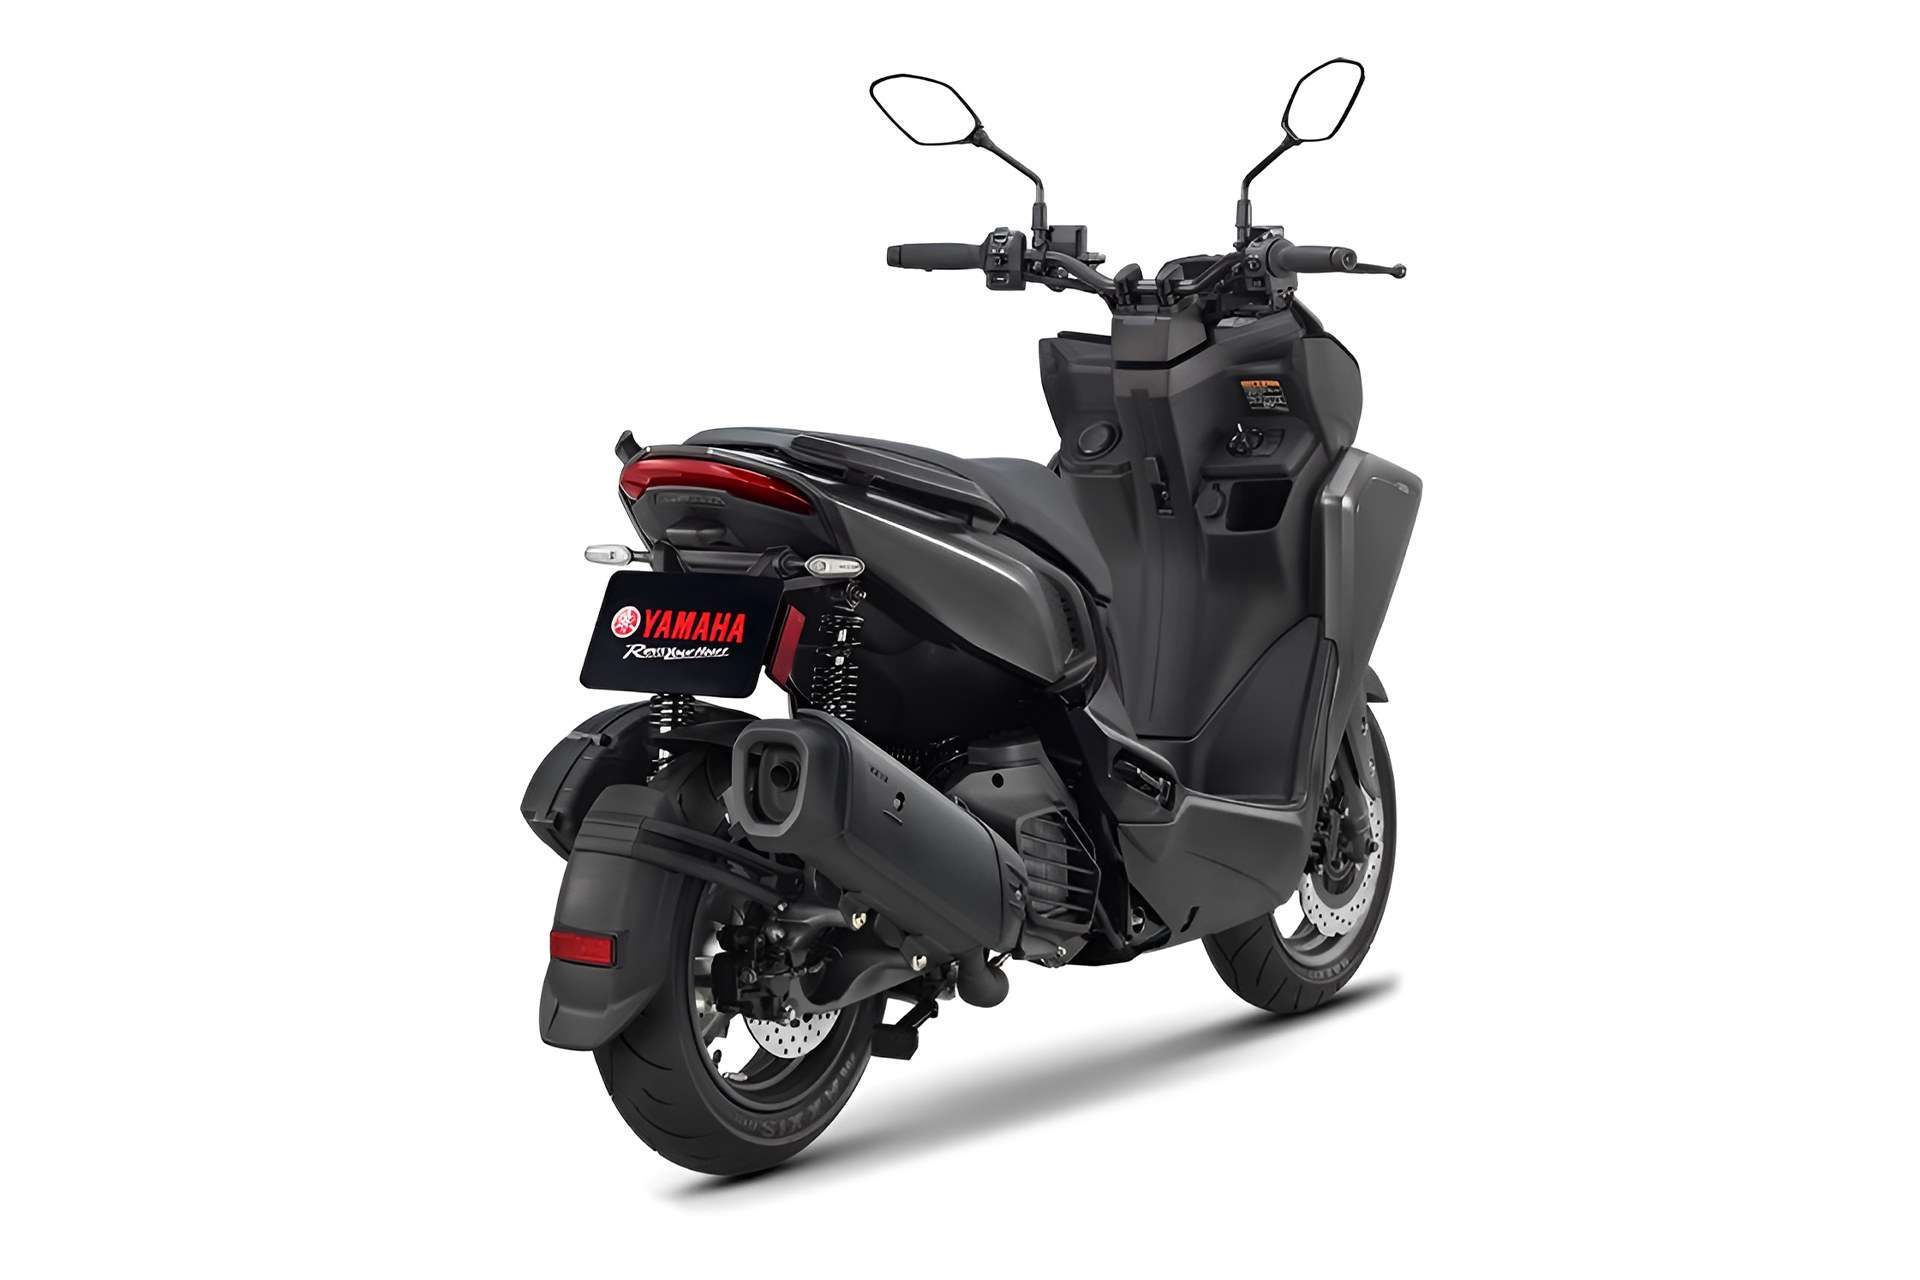 Yamaha lança scooter super econômica com luzes de led que muda de cor, controle de tração, freios ABS e uma série de outros itens tecnológicos